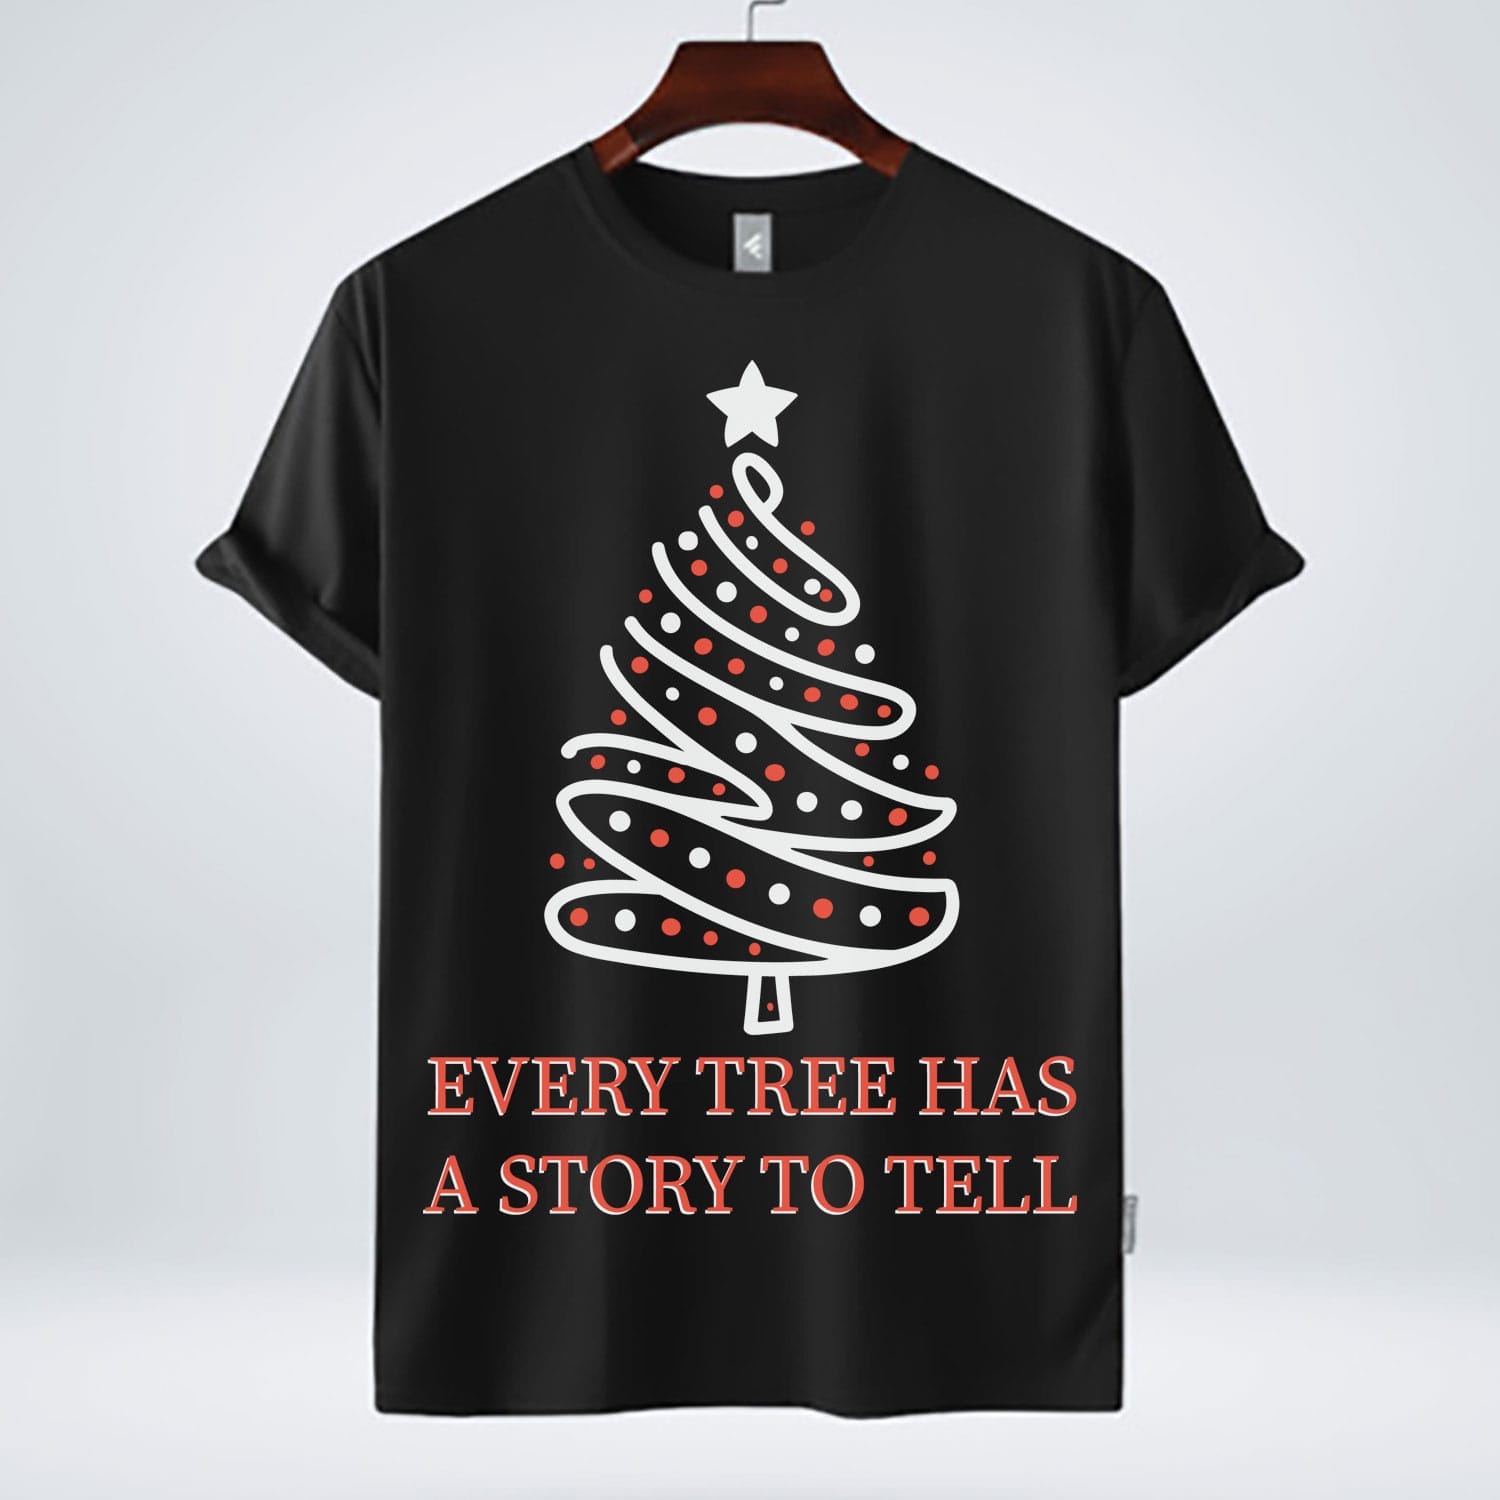 Christmas Tree free tshirt design